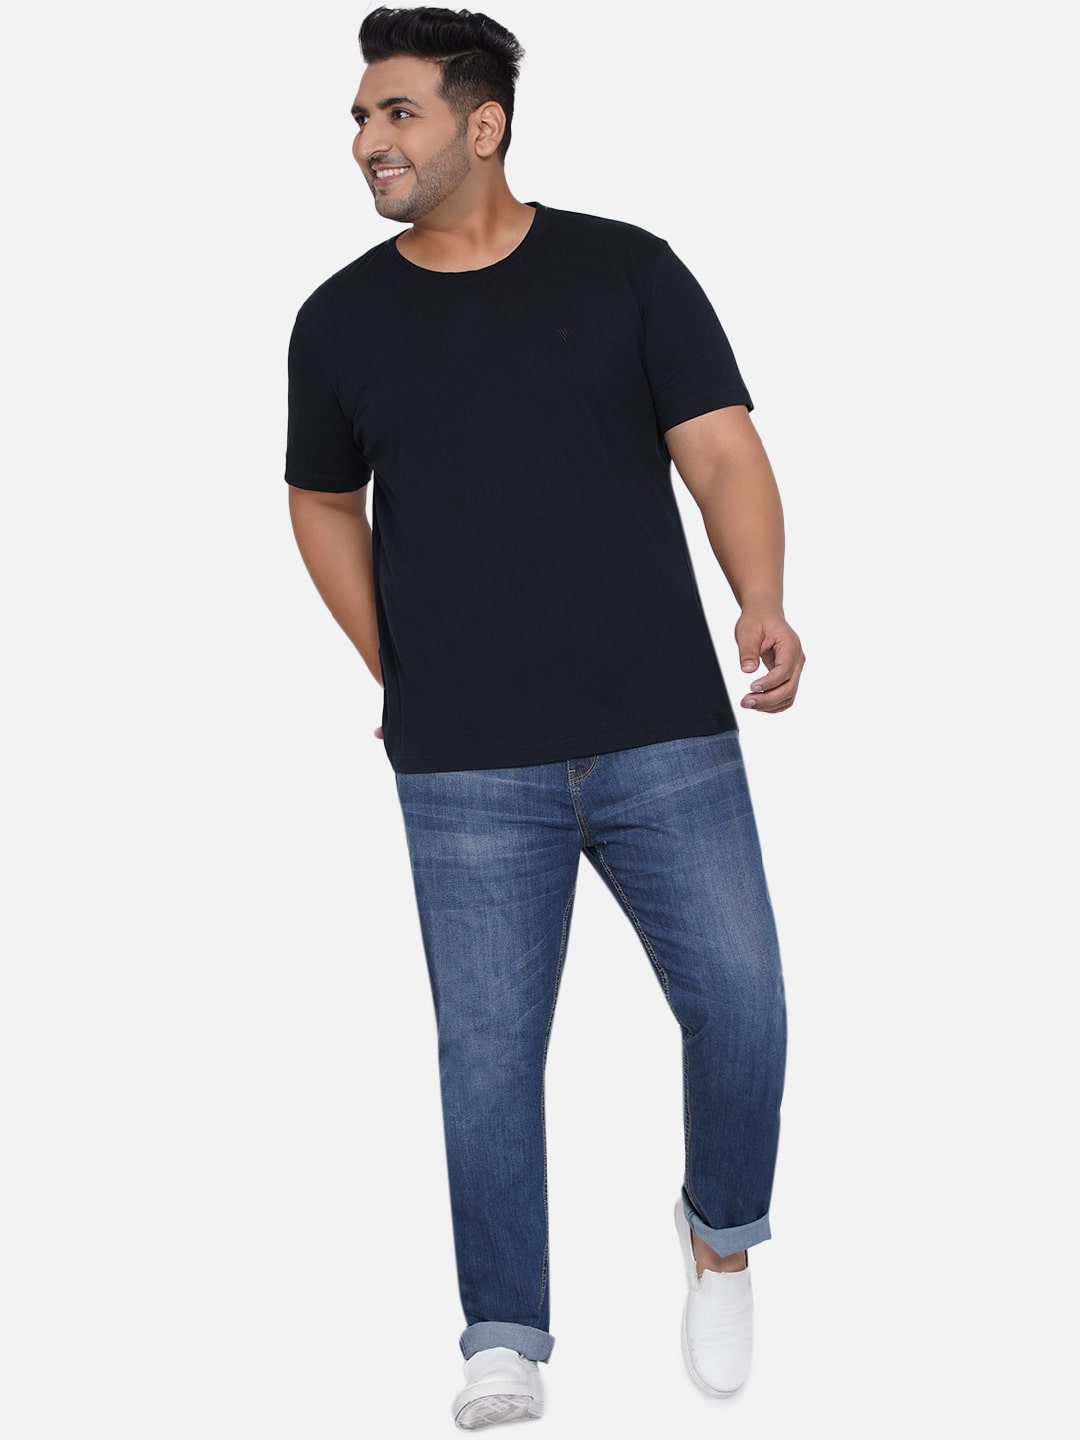 bottomwear/jeans/EJPJ25013/ejpj25013-4.jpg